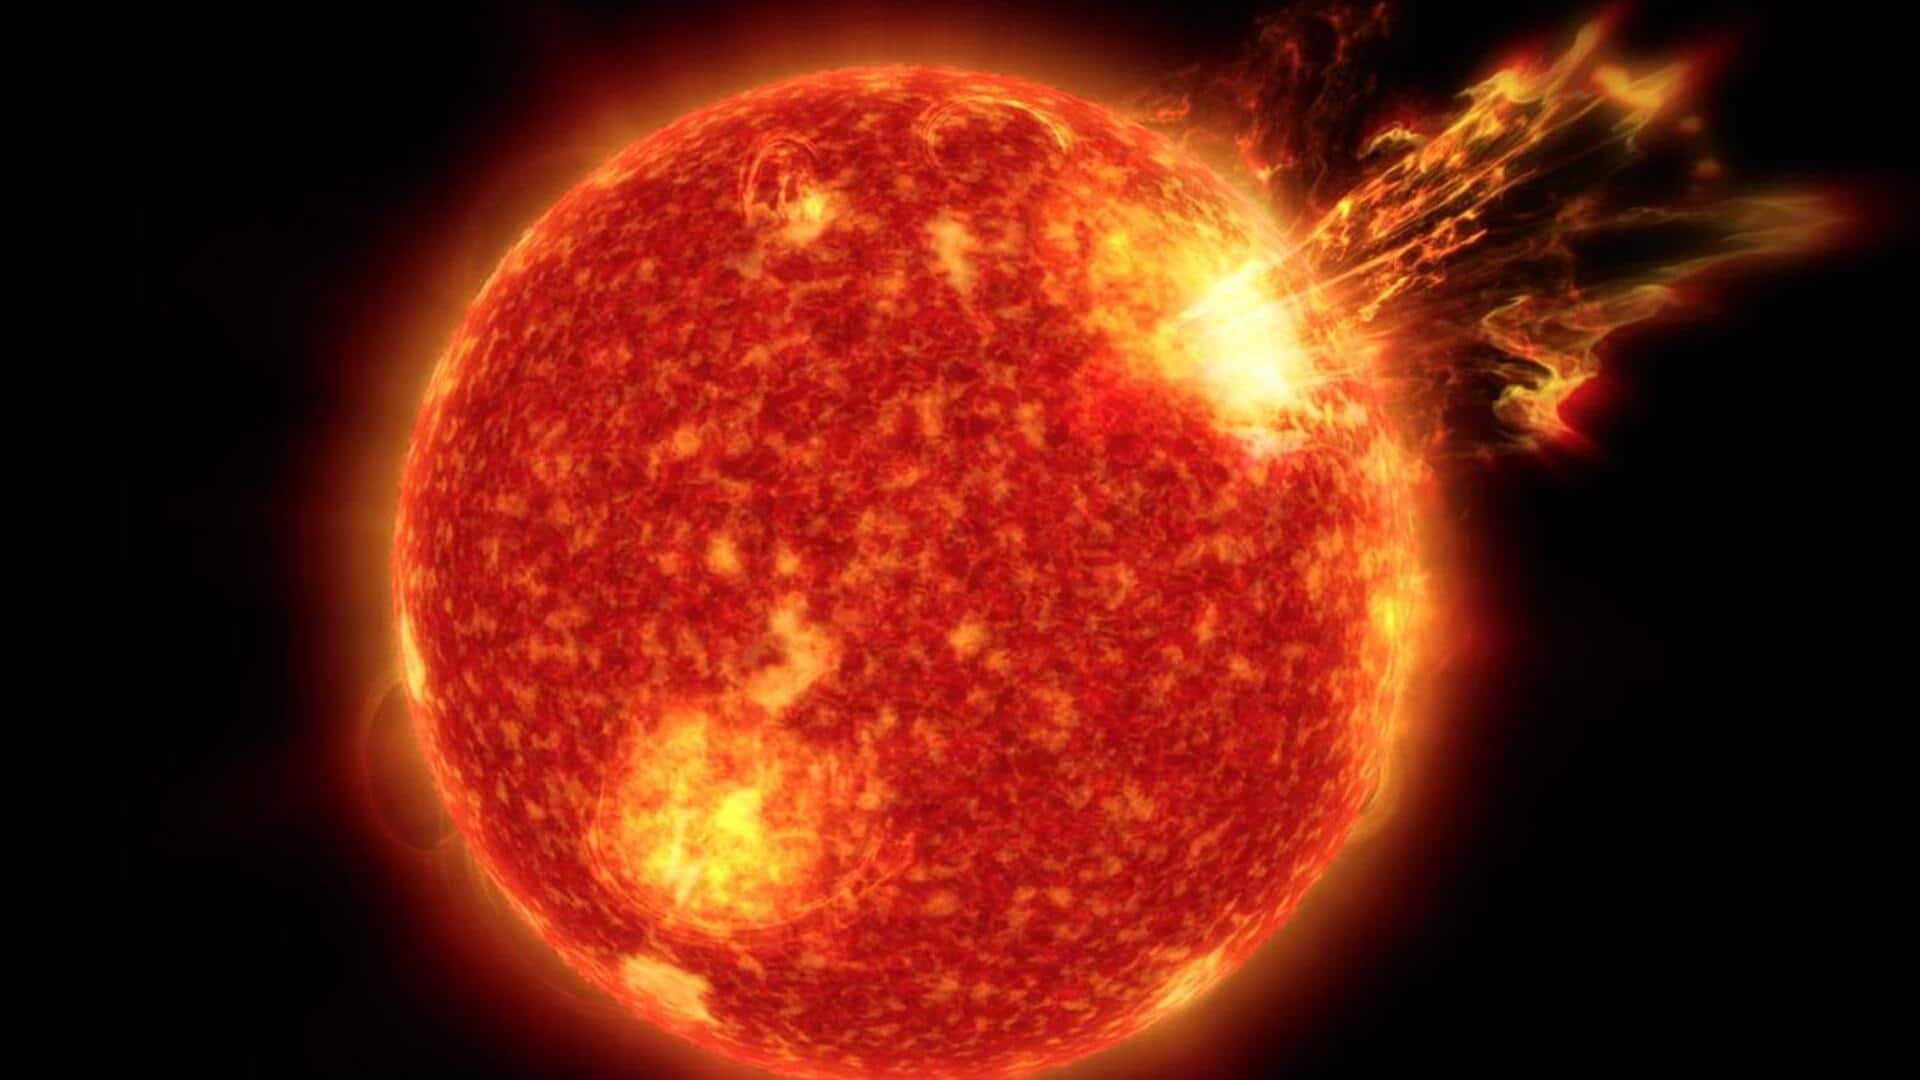 नासा के रोवर ने खींची सनस्पॉट की तस्वीर, सौर तूफान को लेकर जारी हुआ अलर्ट